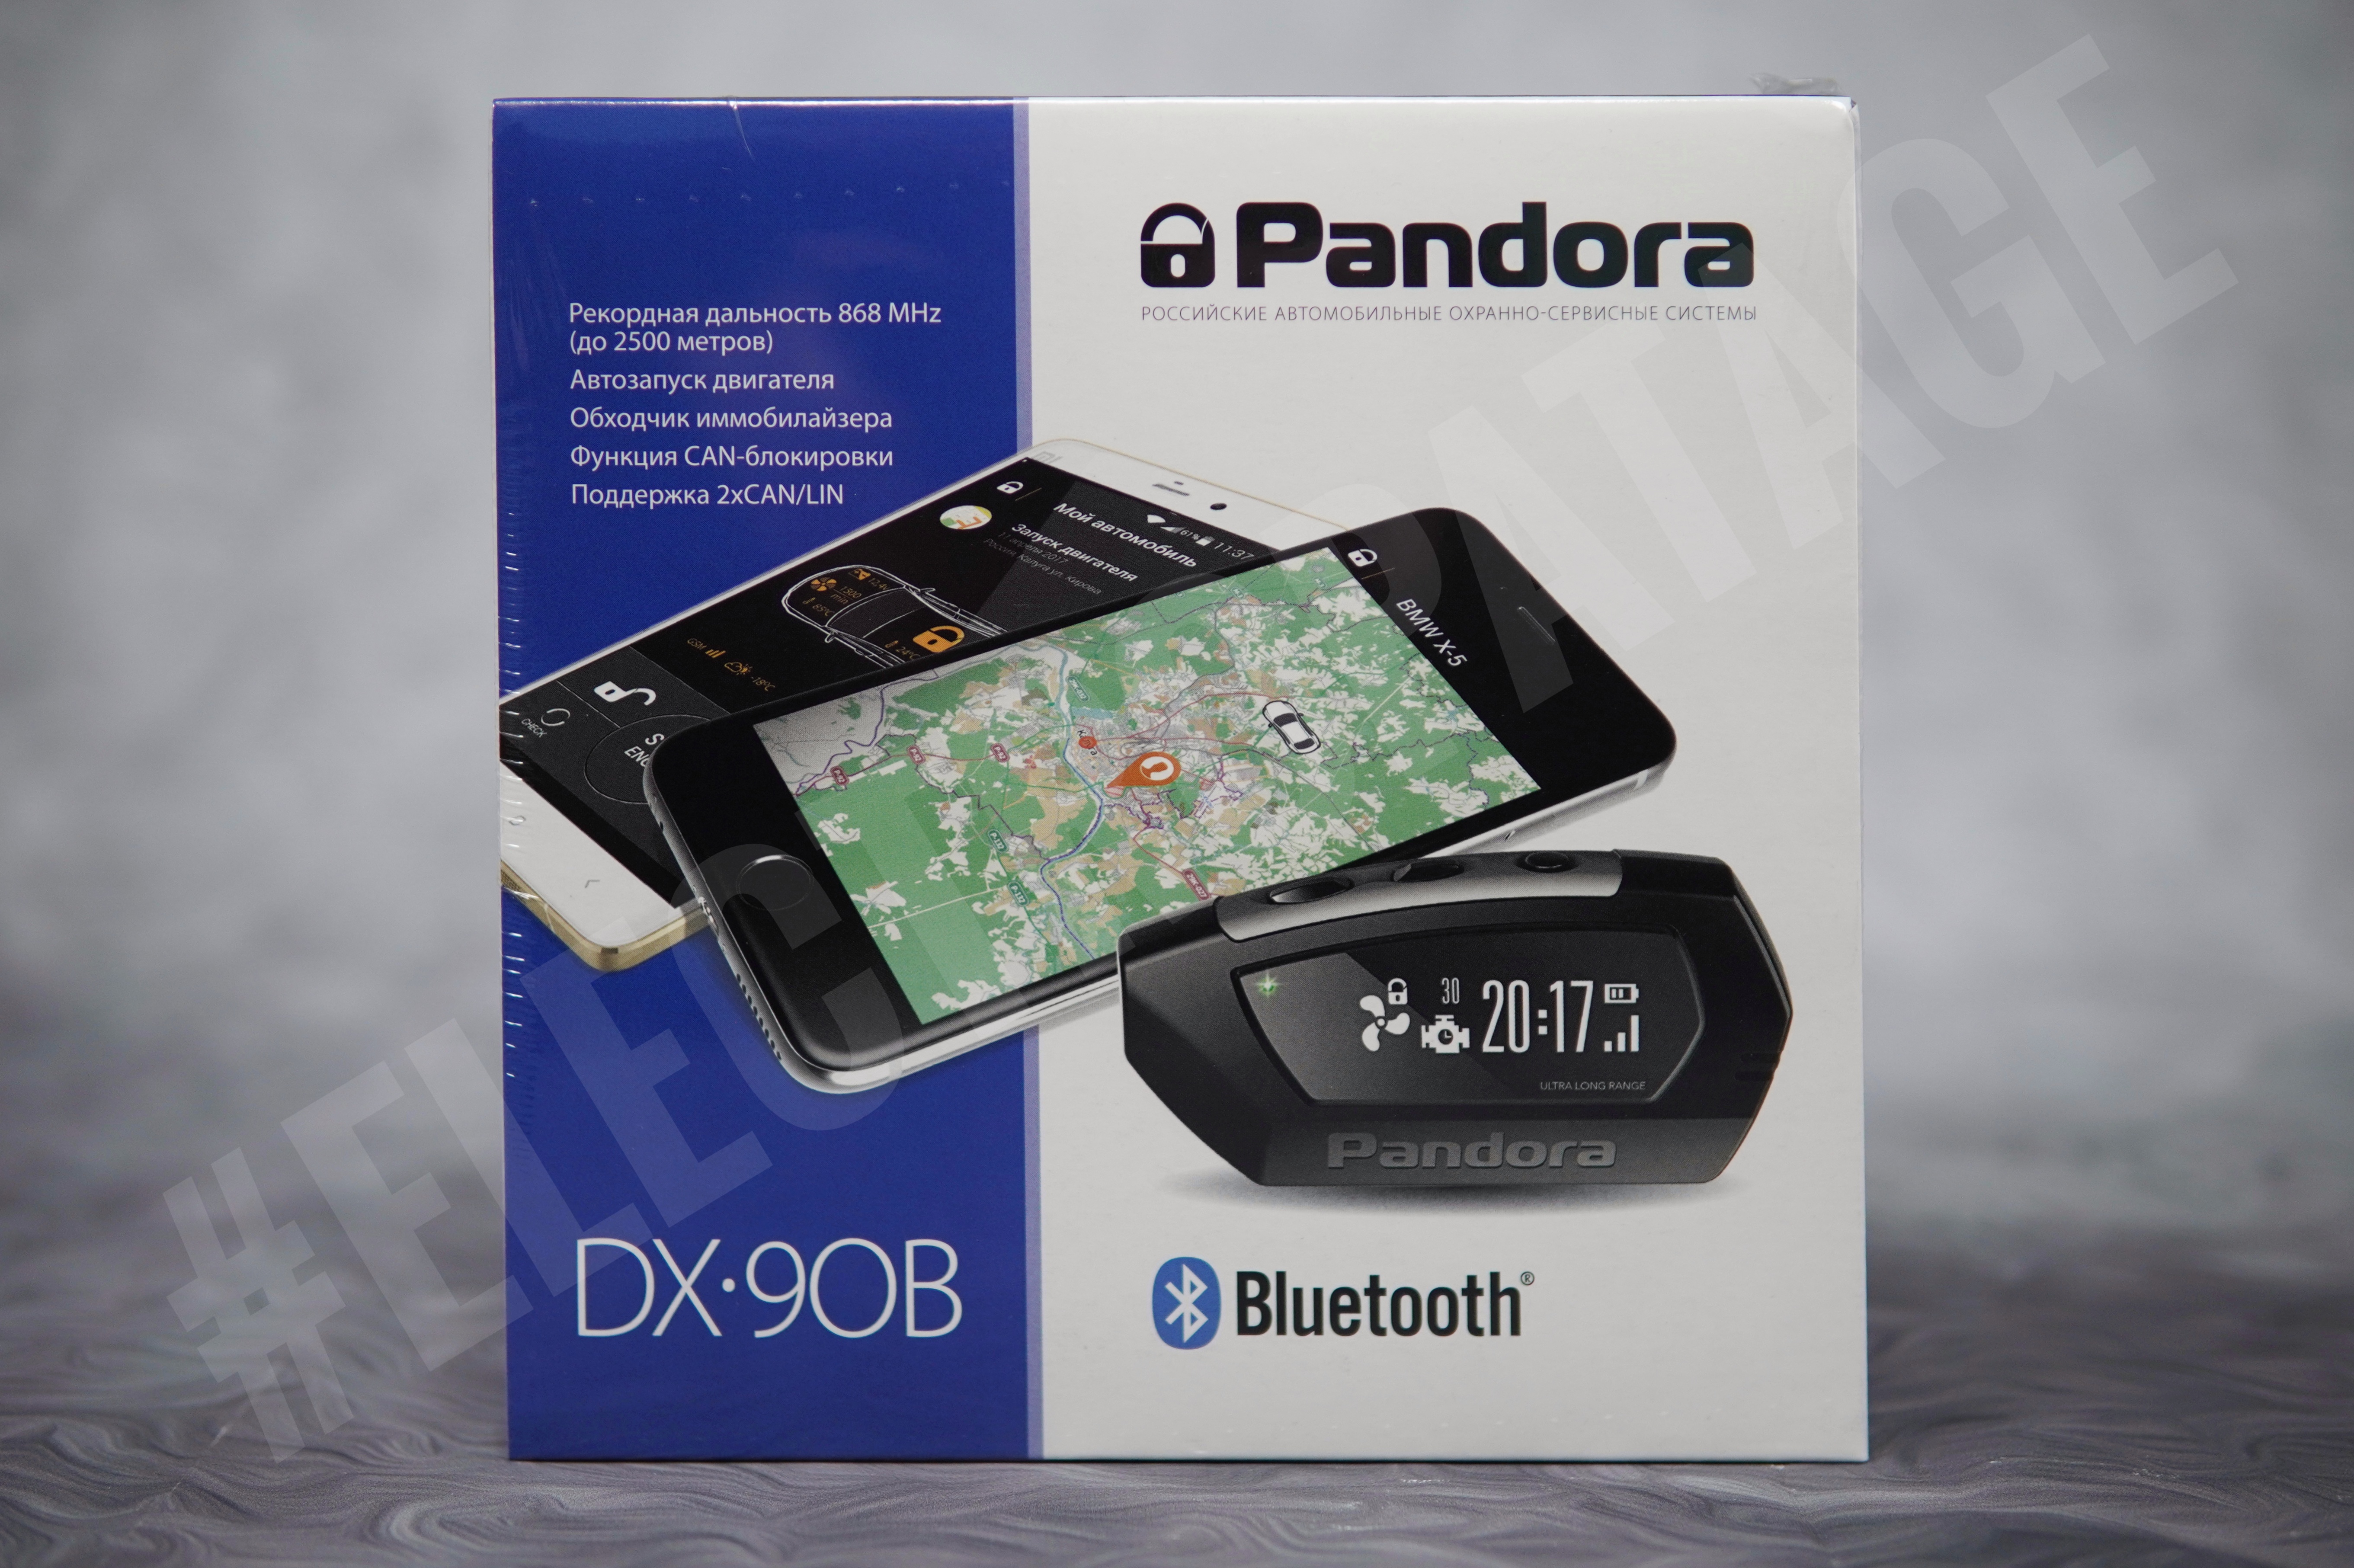 Pandora DX-90B